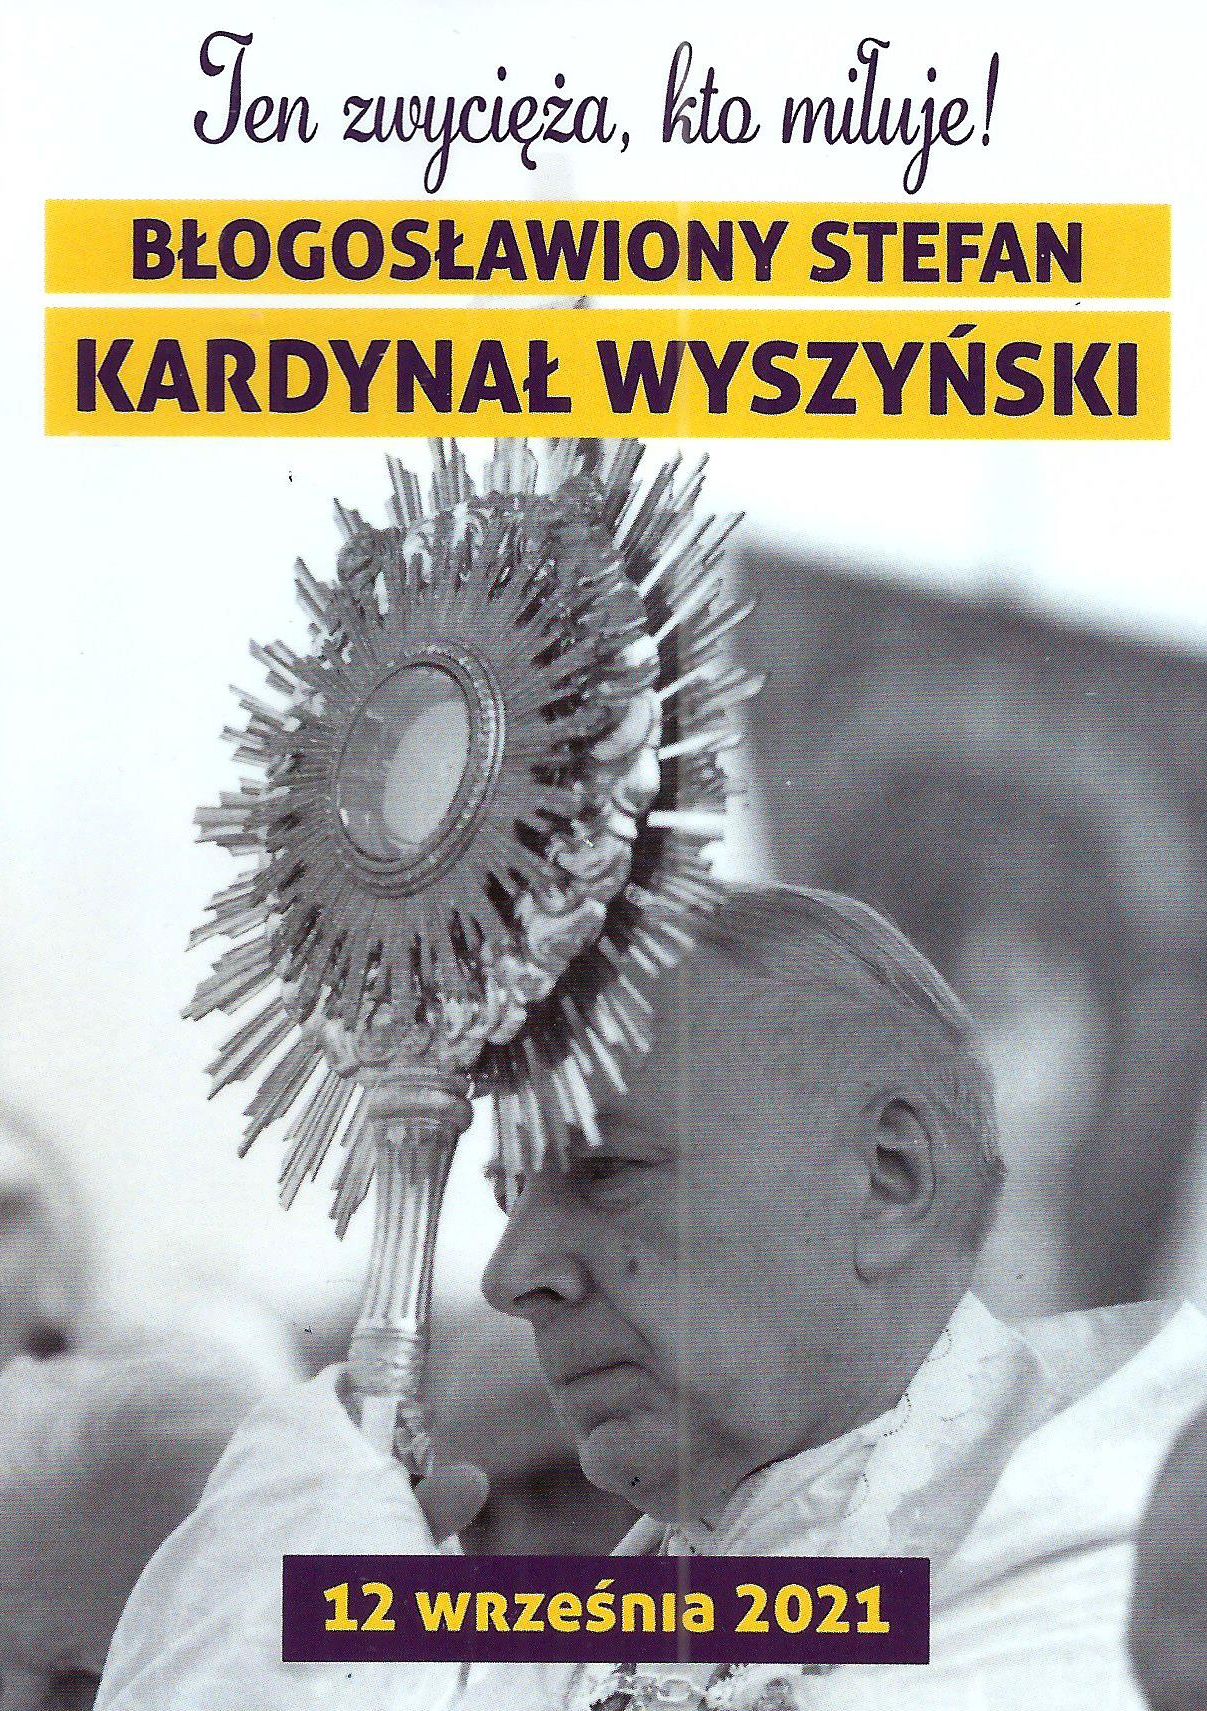 fotka bł. Stefana kard. Wyszyńskiego